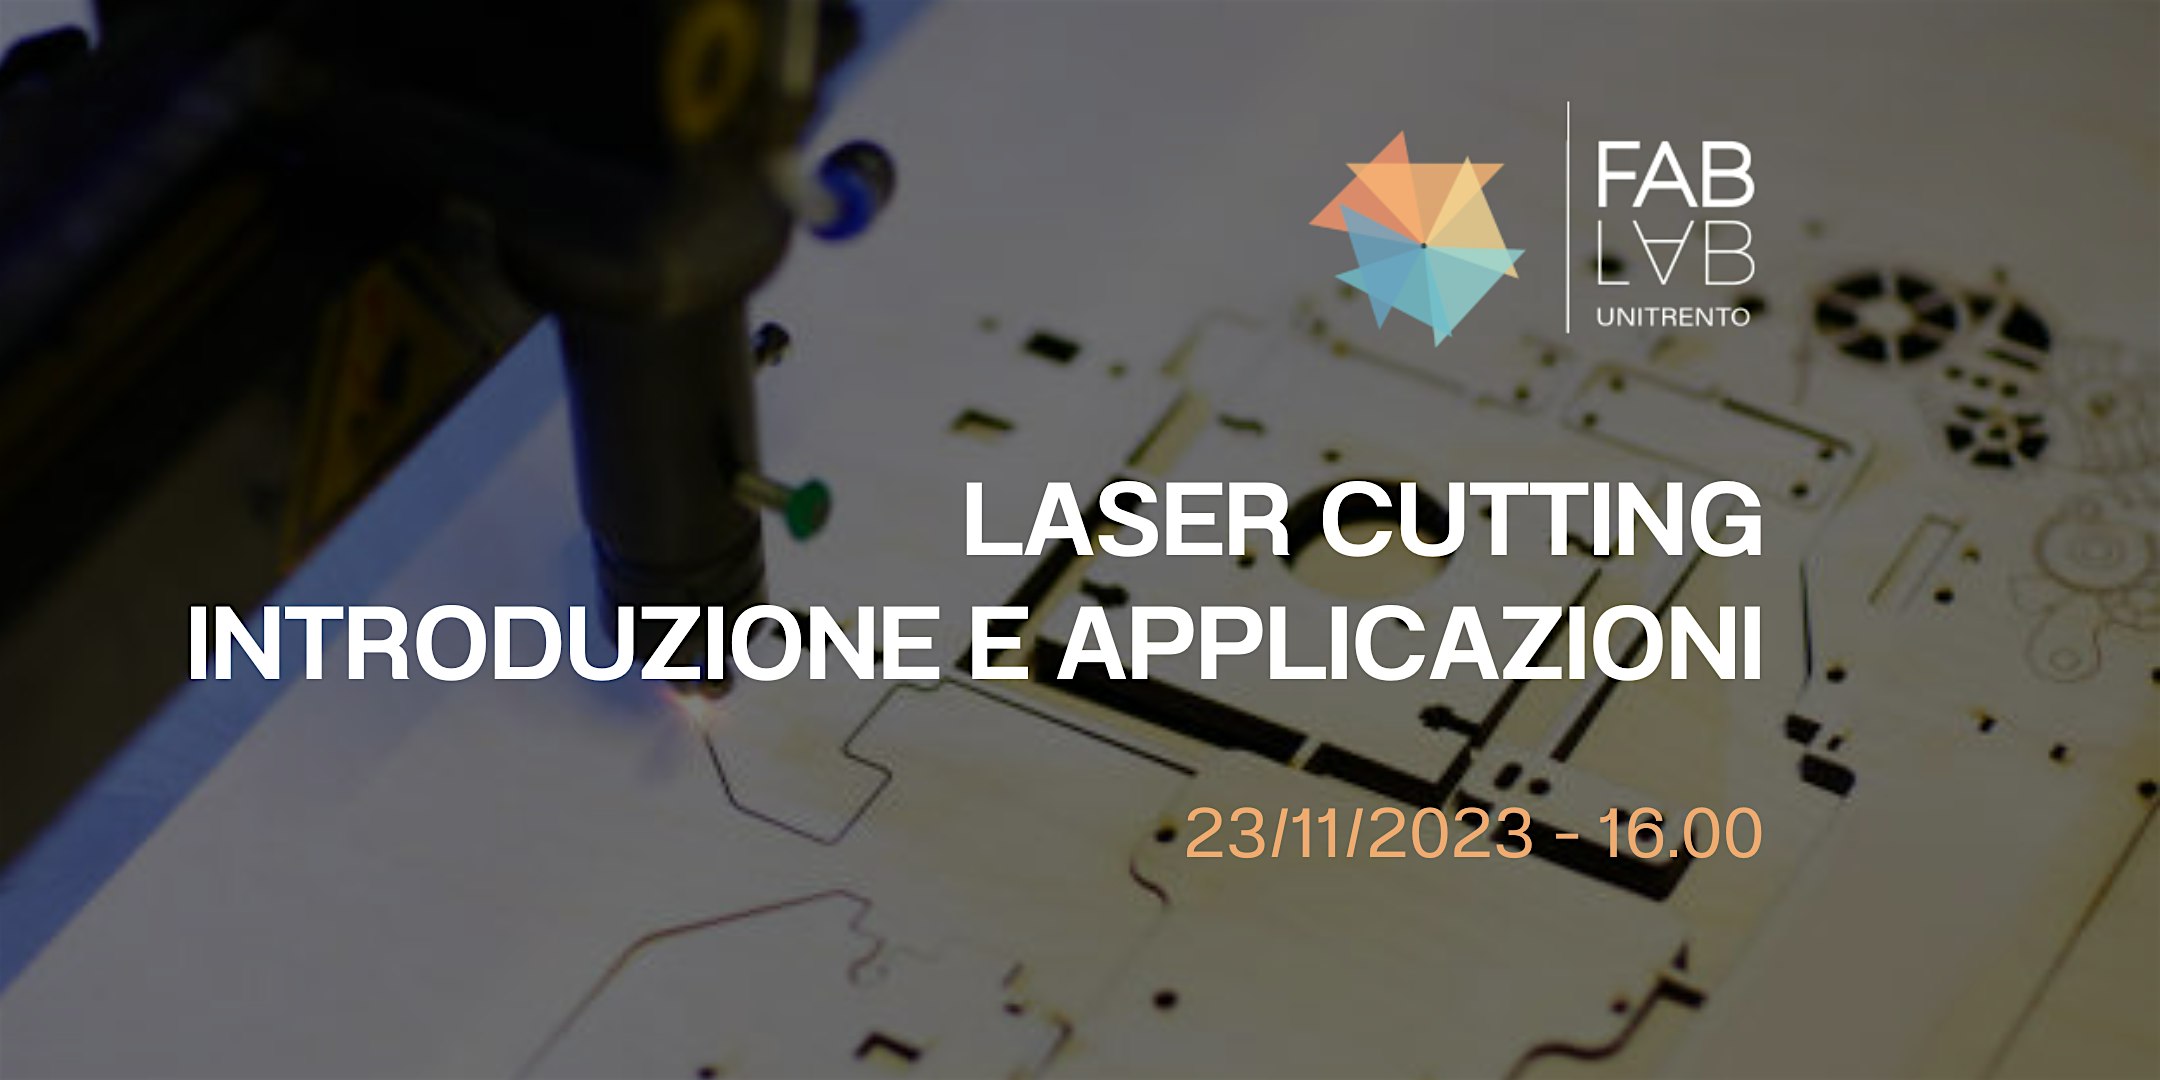 Laser Cutting: Introduzione e applicazioni